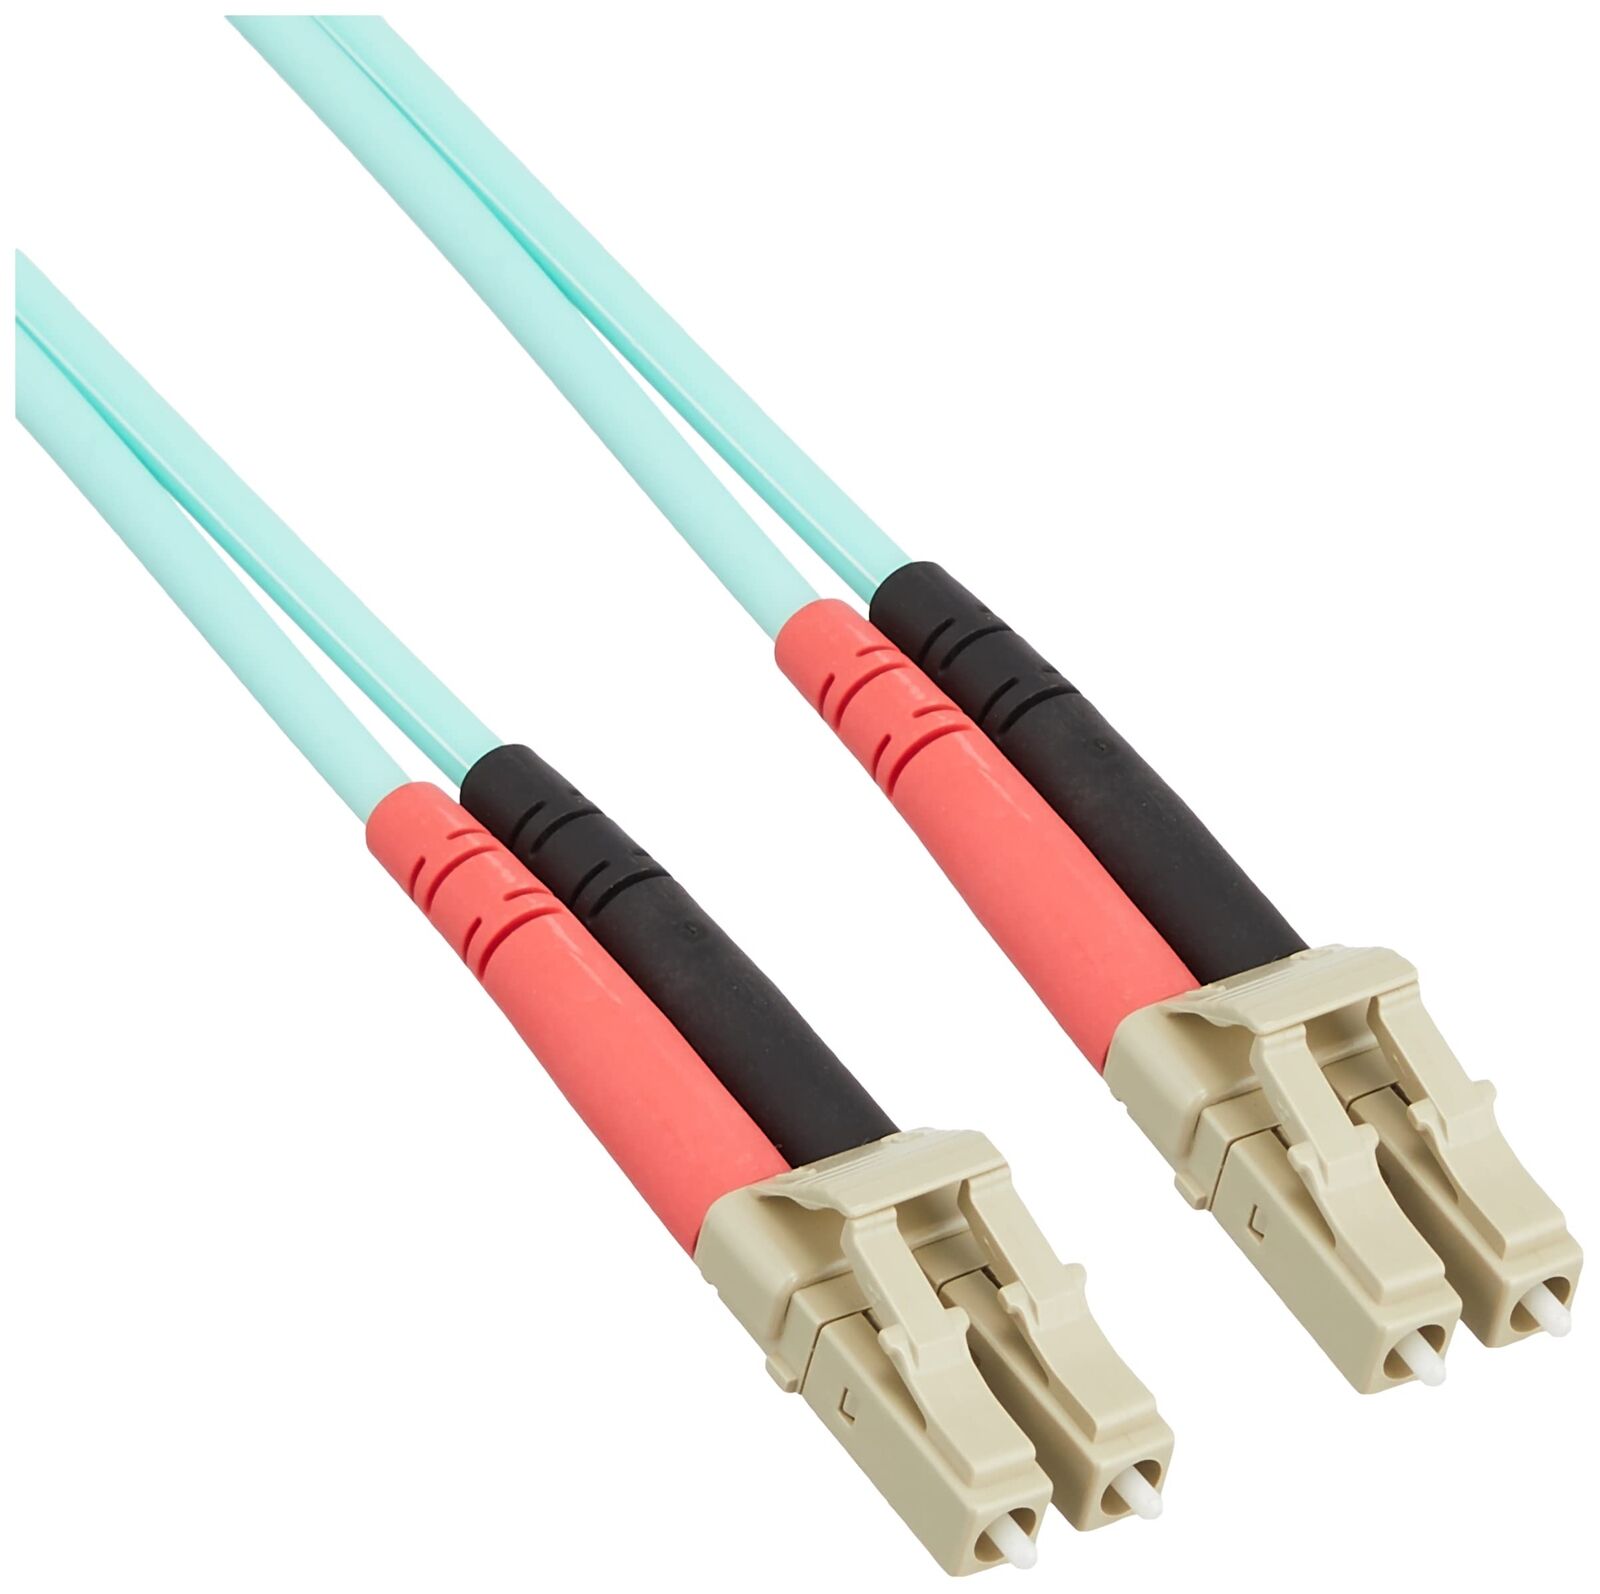 10M 10Gb Aqua Multimode 50/125 Fiber Patch Cable Lc/Lc (UK IMPORT) OFF-ACC NEW